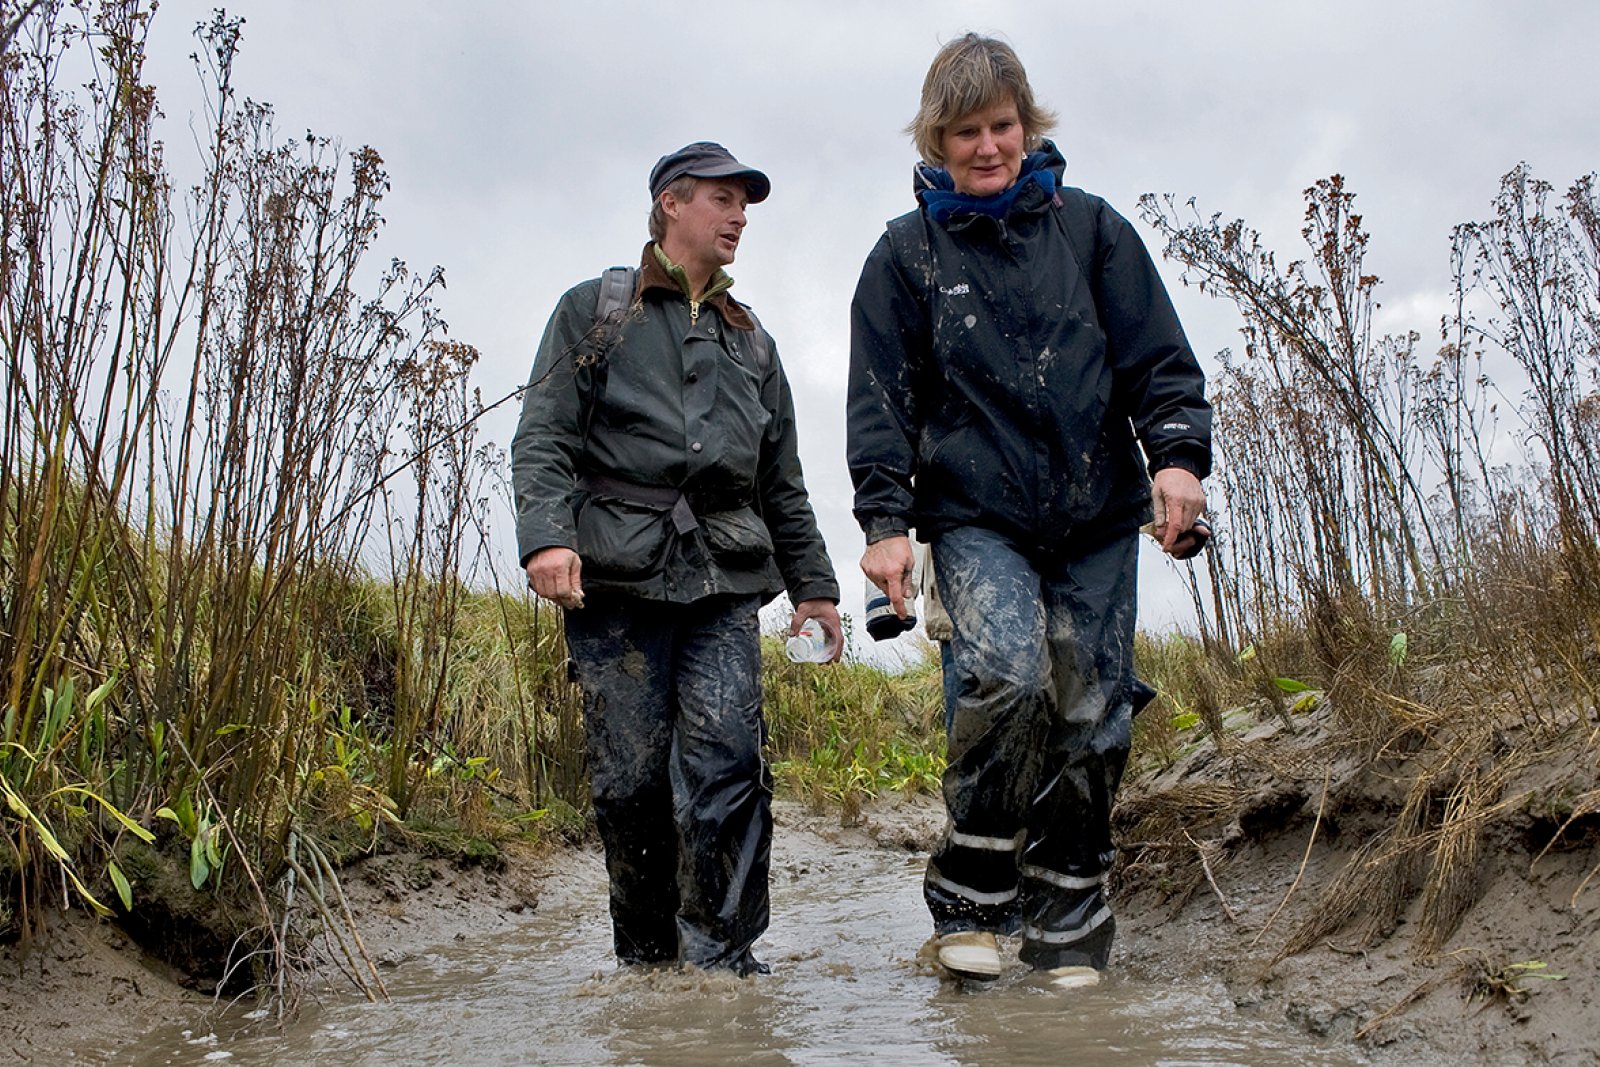 Walking around the mud in Zeeland